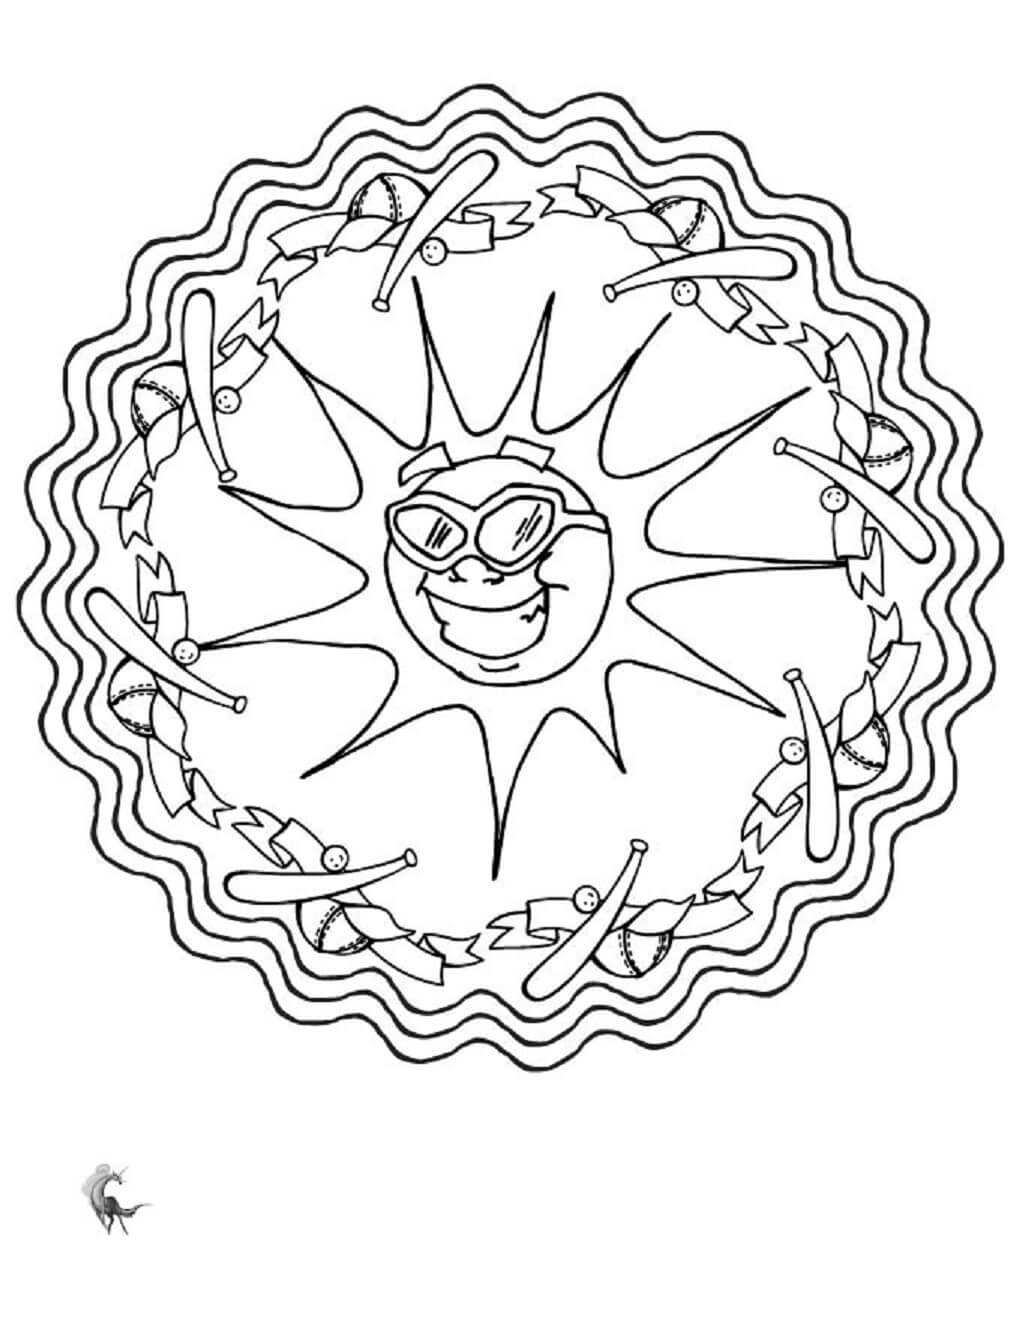 Mandala Fun Sun in Summer Coloring Page Mandalas